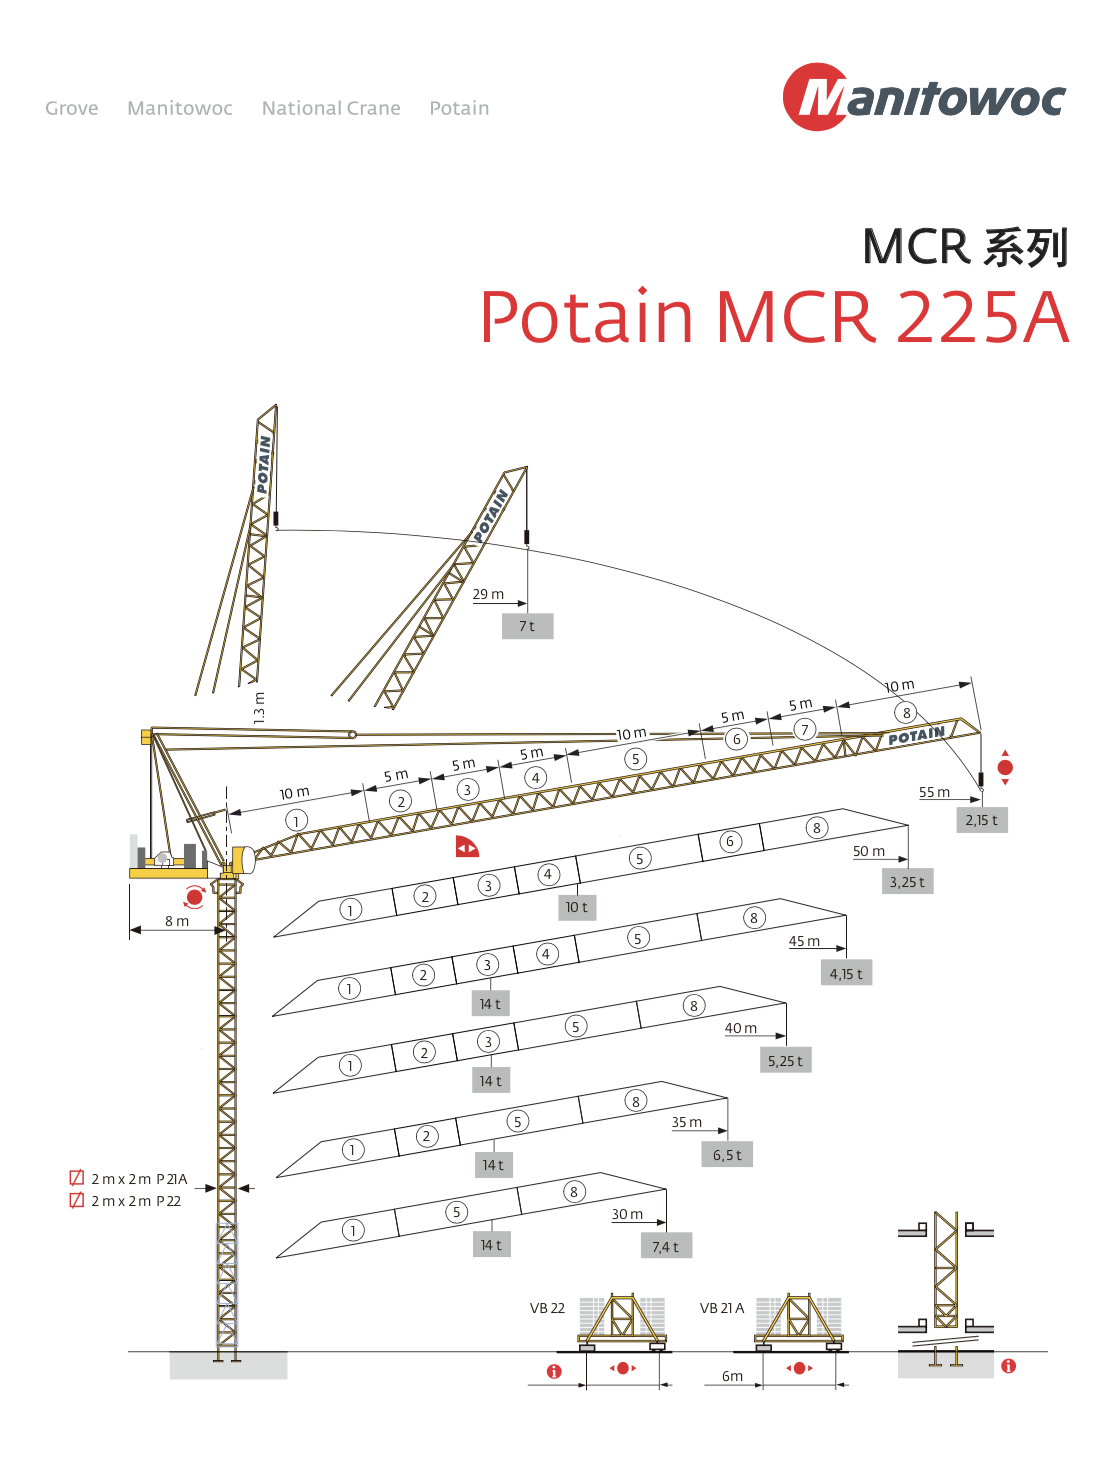 LUFFING TOWER CRANE MCR225A-14T JIB LENGTH 55M 2